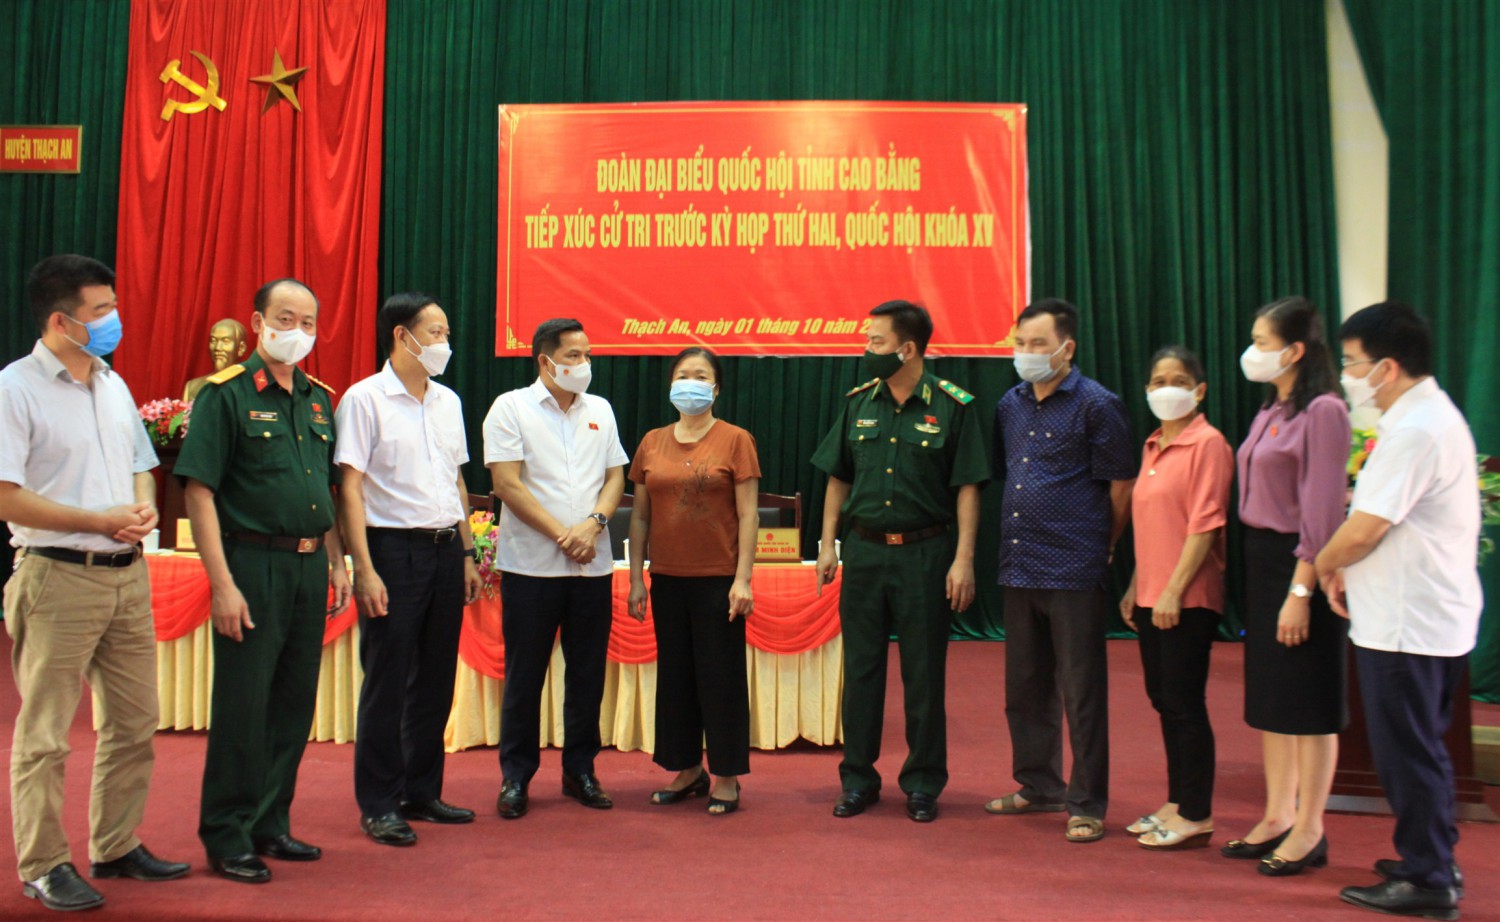 Đoàn đại biểu Quốc hội tỉnh và lãnh đạo huyện Thạch An trao đổi với cử tri.